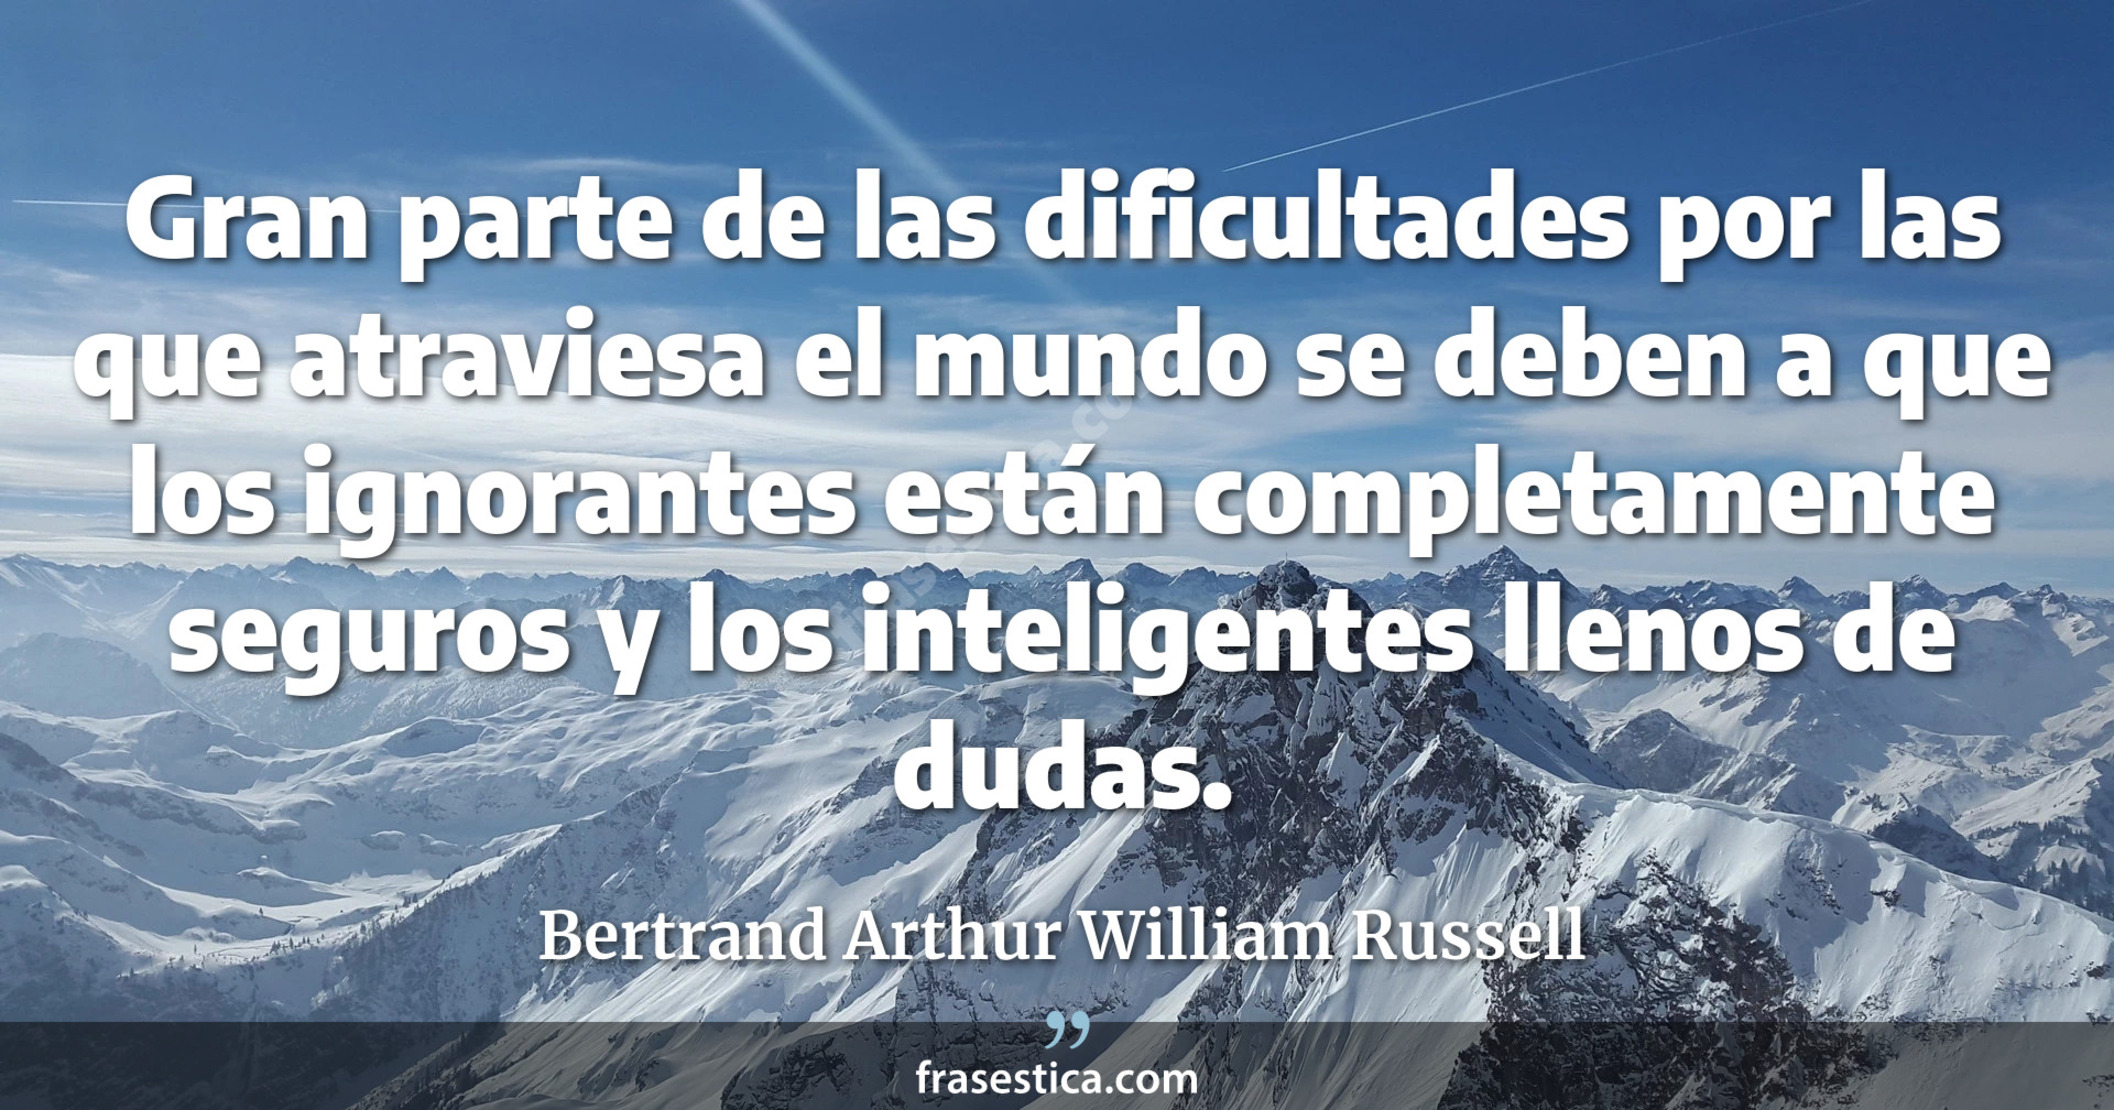 Gran parte de las dificultades por las que atraviesa el mundo se deben a que los ignorantes están completamente seguros y los inteligentes llenos de dudas. - Bertrand Arthur William Russell